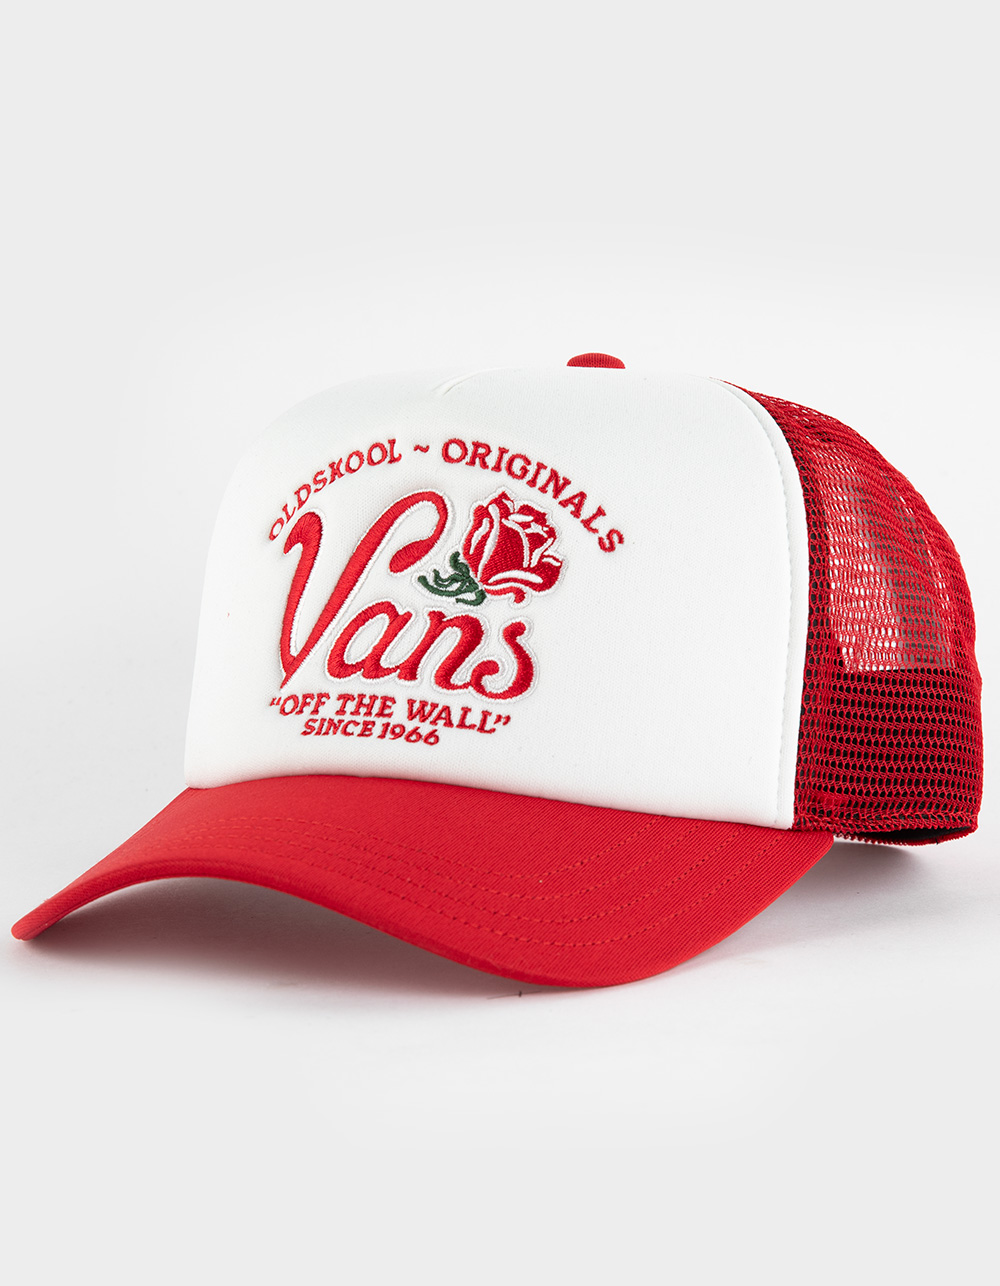 VANS Winding Road Mens Trucker Hat